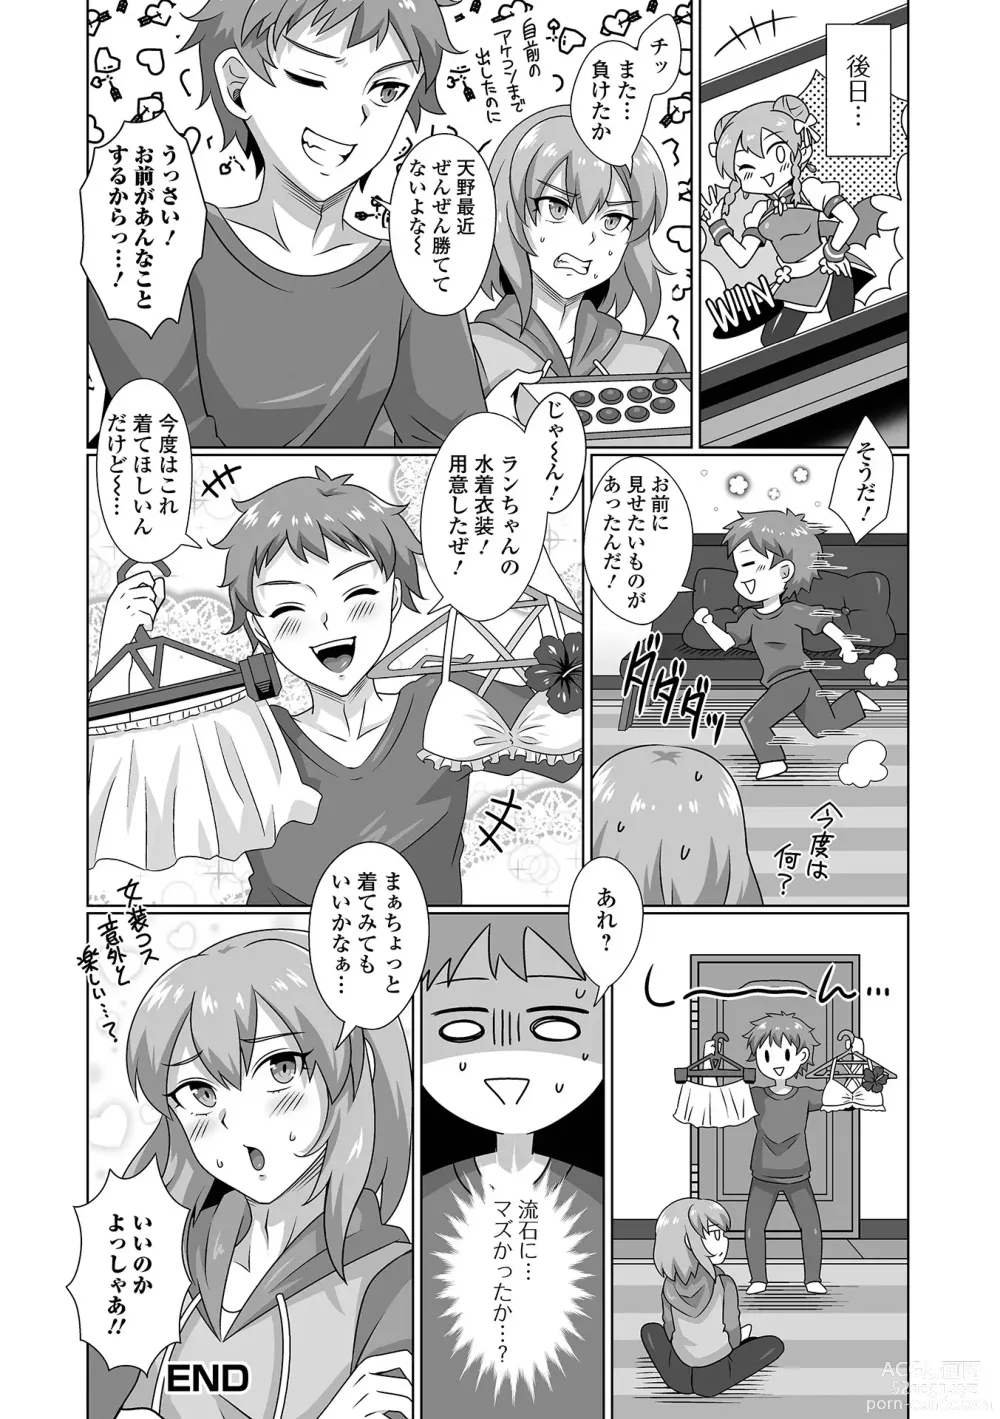 Page 84 of manga Gekkan Web Otoko no Ko-llection! S Vol. 92